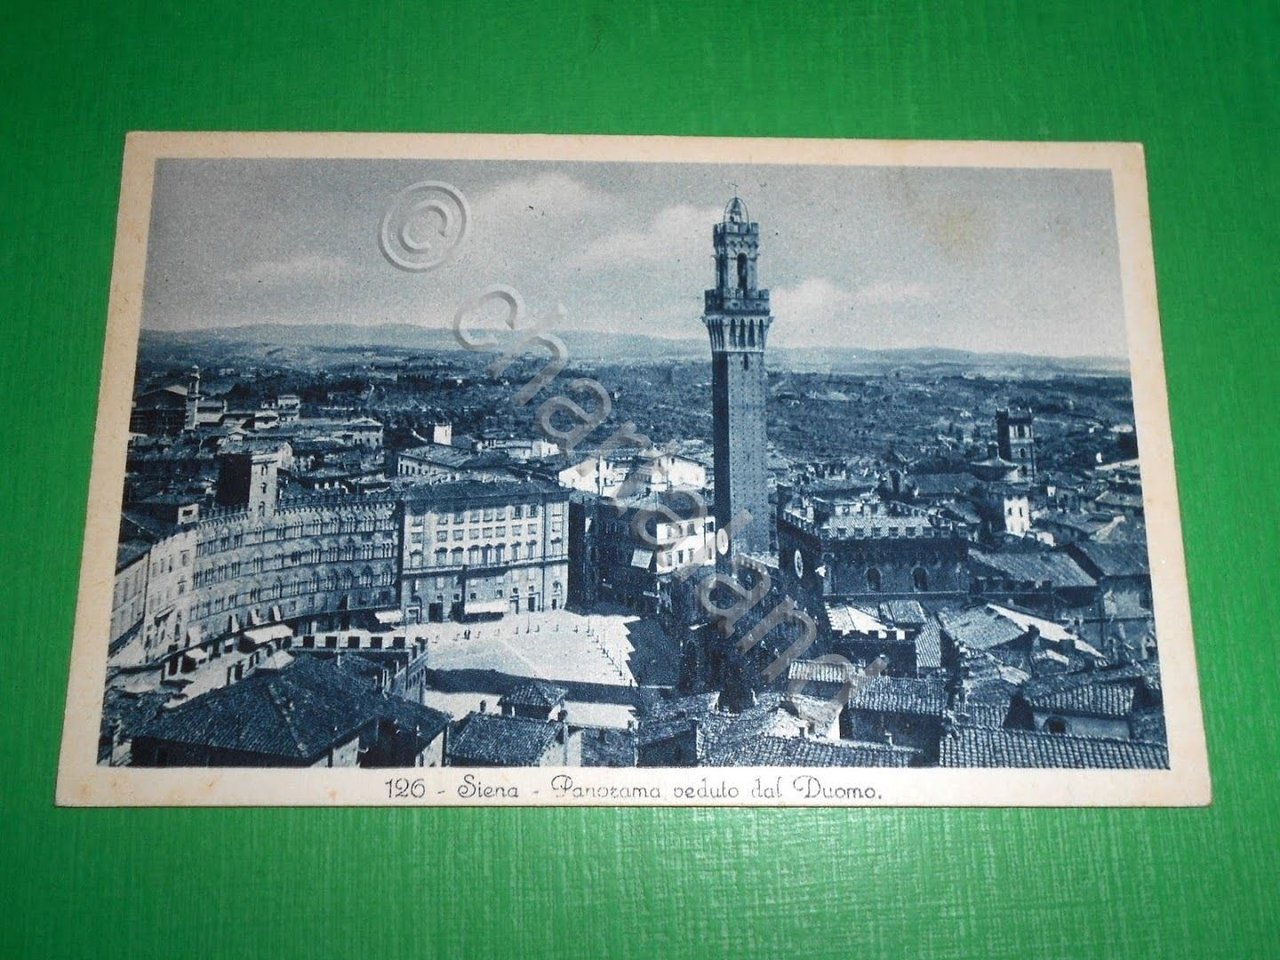 Cartolina Siena - Panorama veduto dal Duomo 1935 ca.